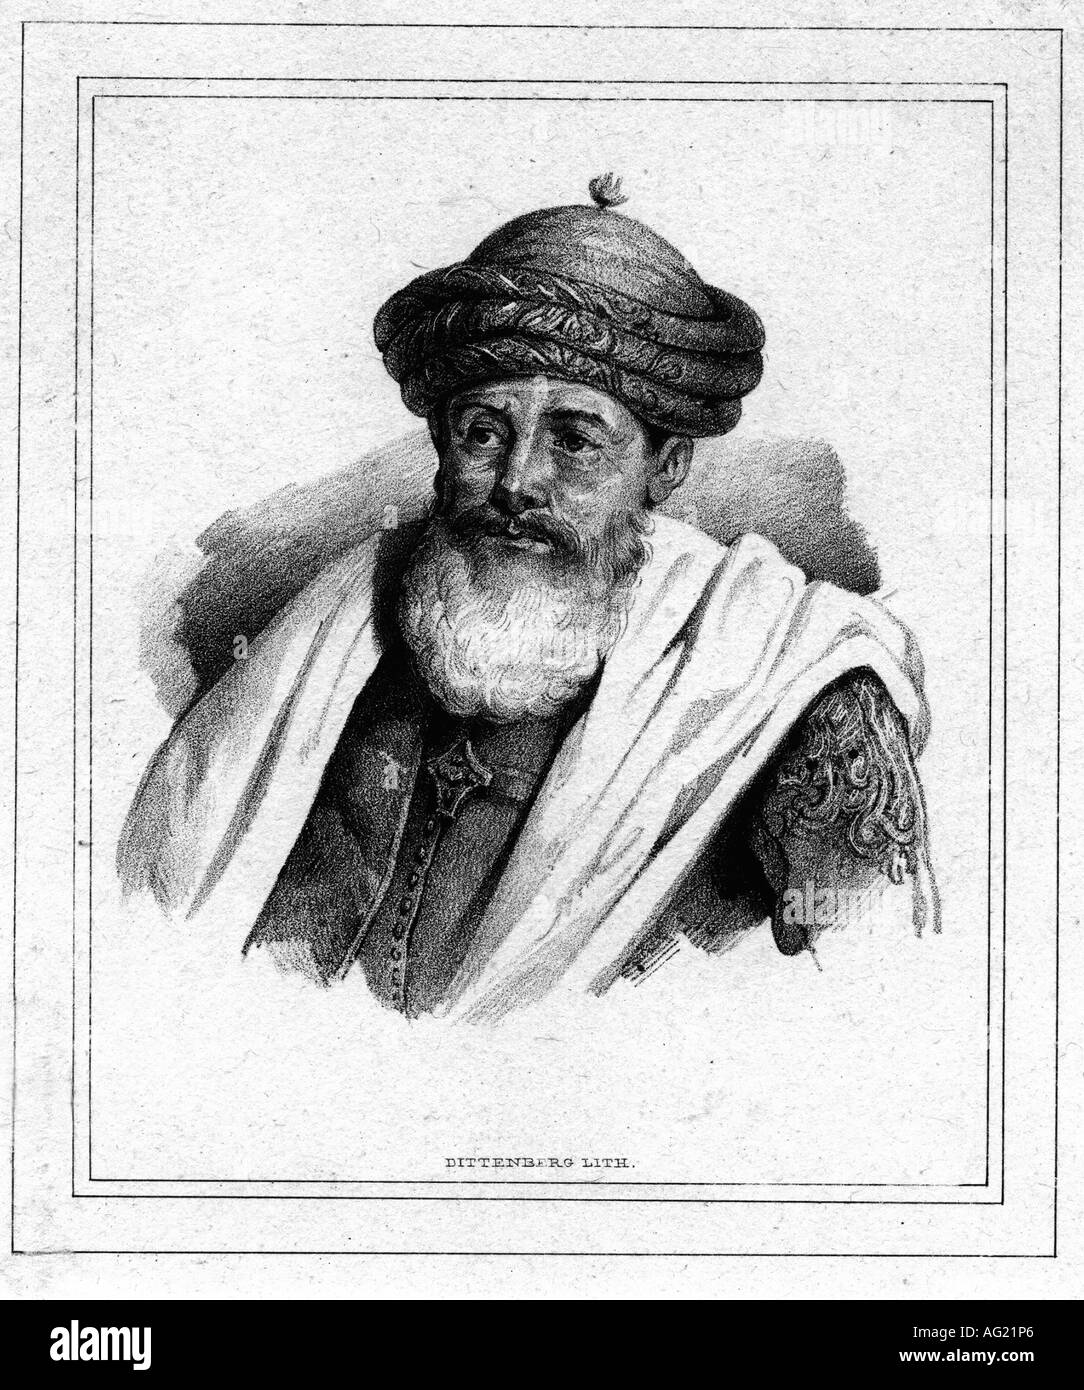 Hussein Pasha, 1773 - 1838, Dey of Algeri 1816 - 1830, ritratto, incisione di Dittenberg, 19th secolo, Algeria, Nord Africa, politica, musulmano, turbante, , Foto Stock